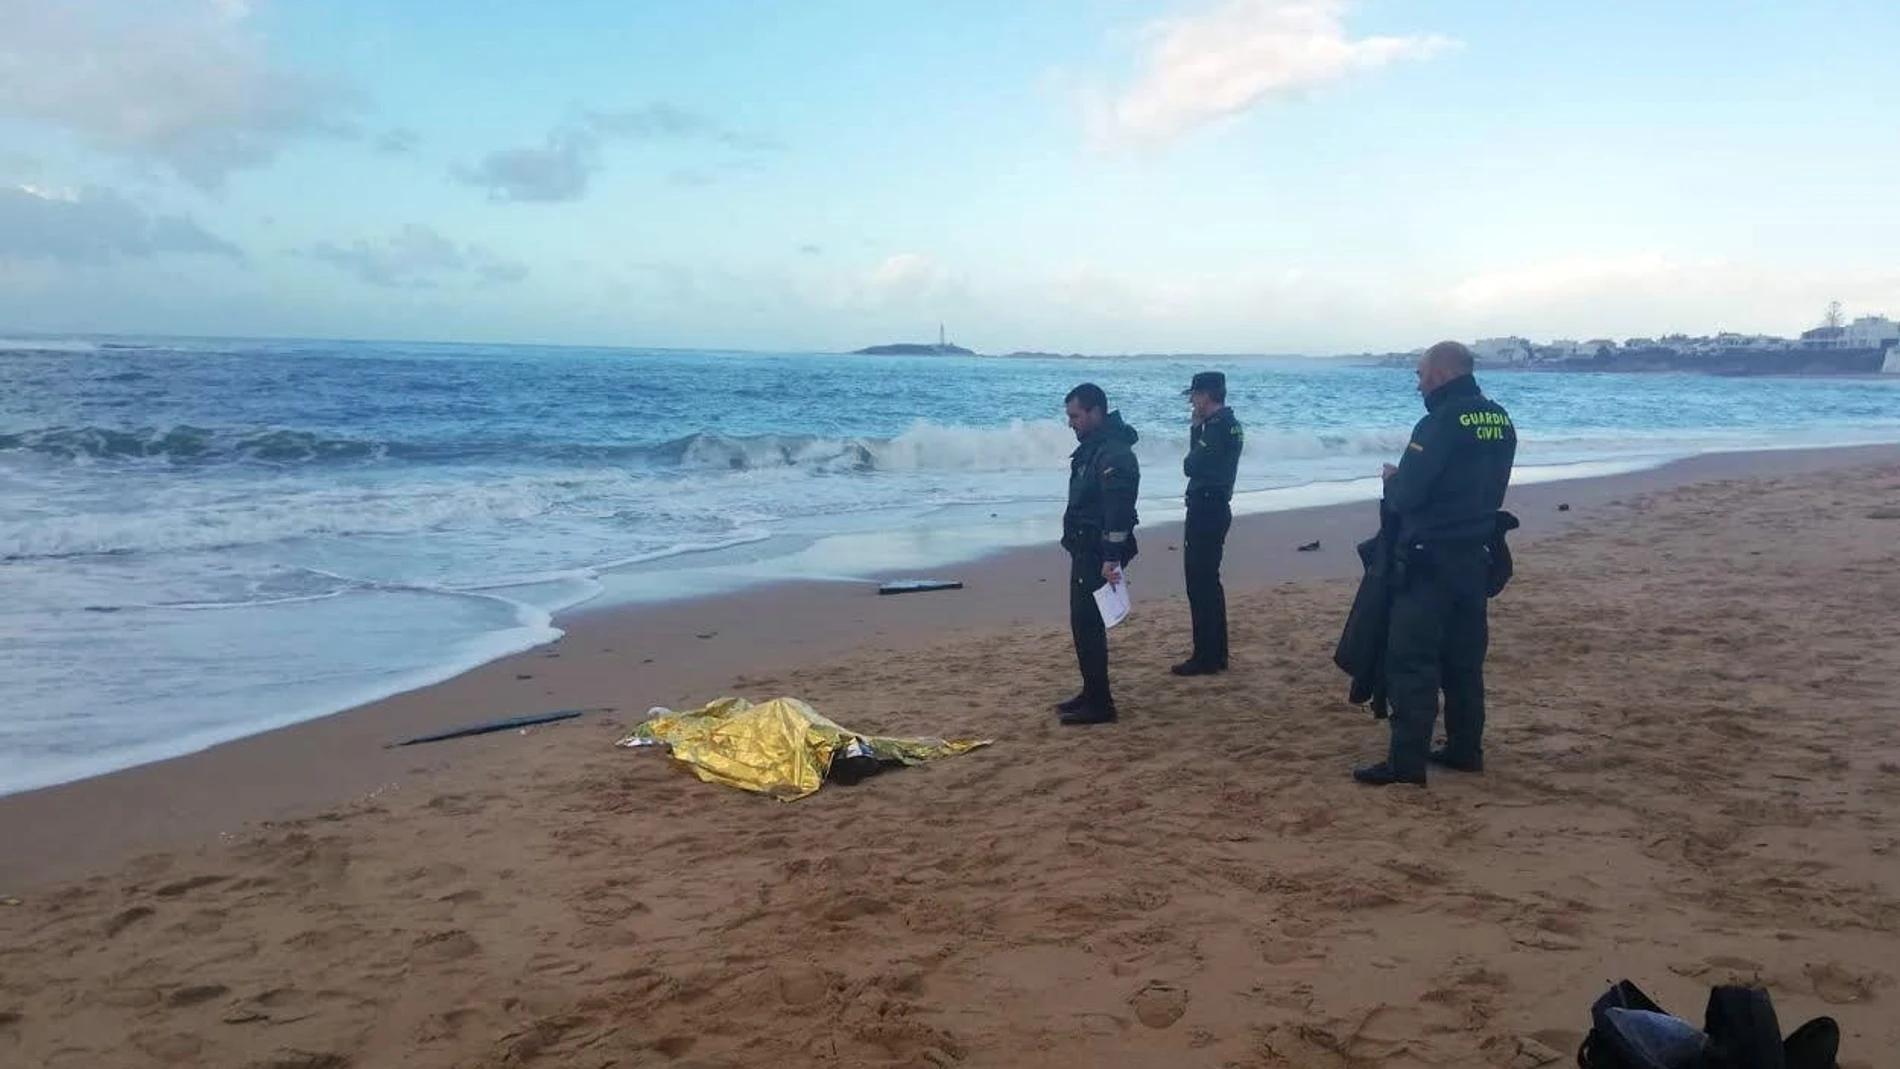 Fotografía facilitada por la Guardia Civil que muestra a agentes junto al cuerpo de uno de los inmigrantes fallecidos en la costa de Melilla